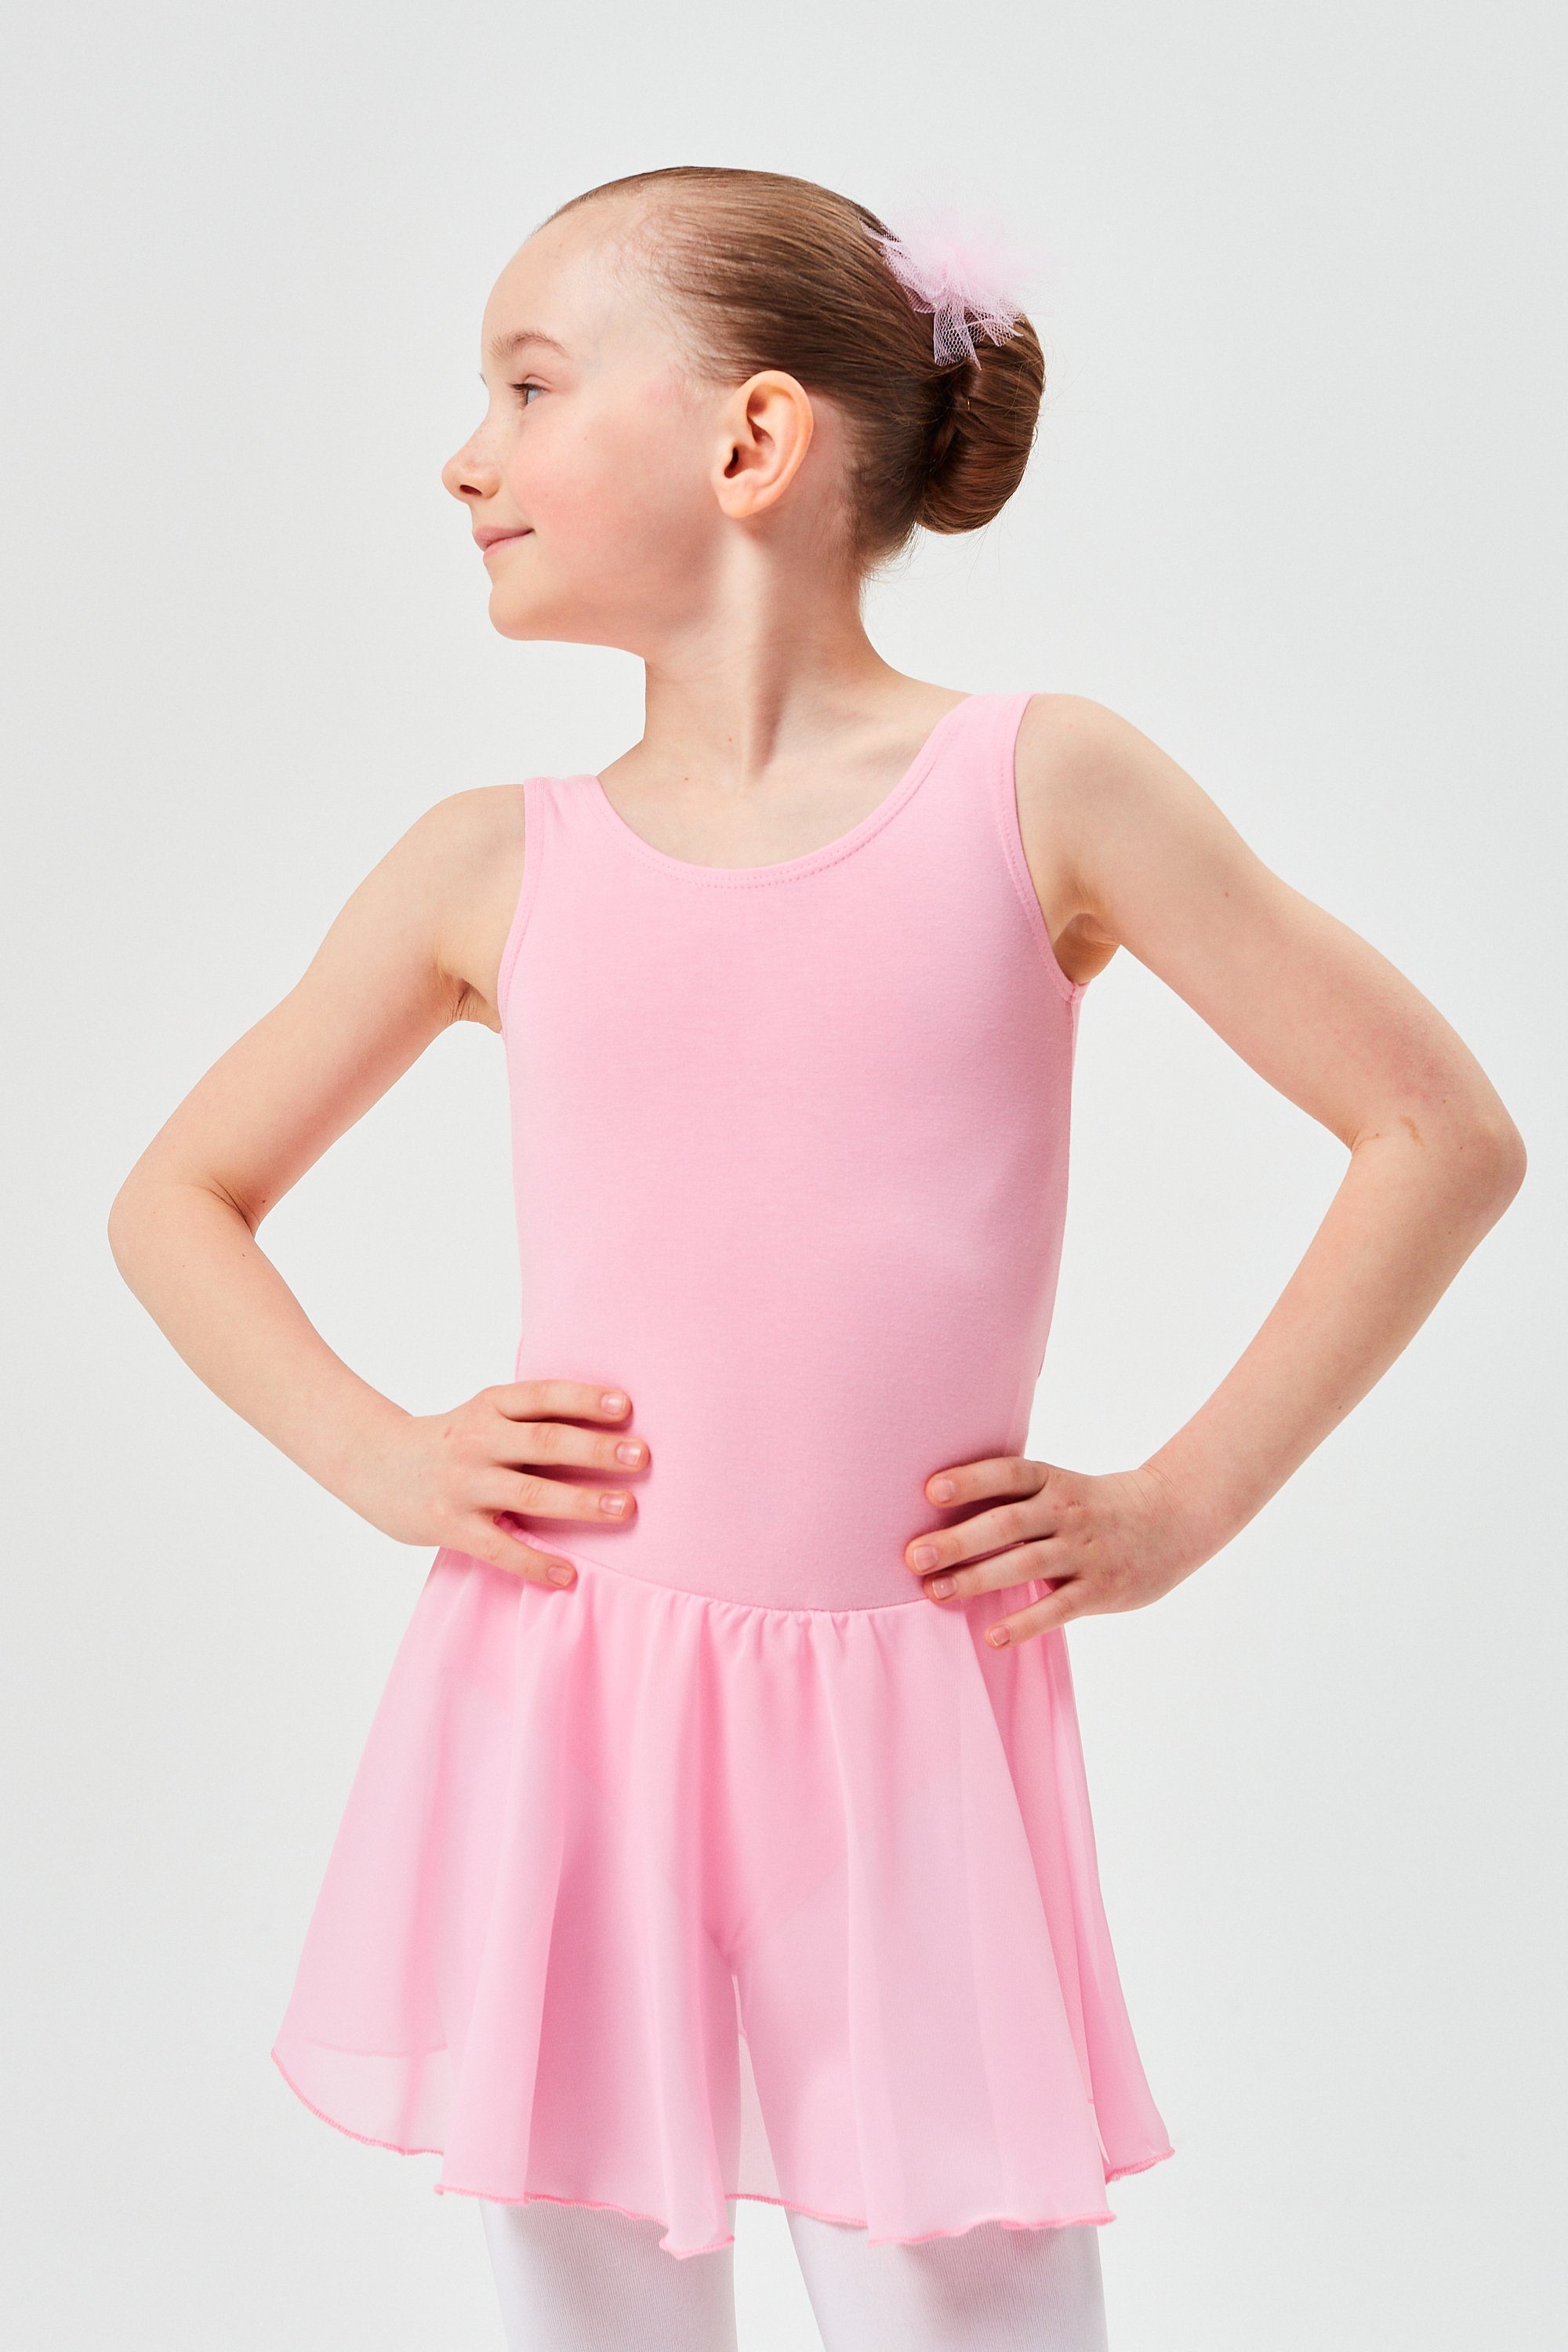 für Baumwollmaterial tanzmuster aus Mädchen Chiffonkleid mit Ballett Chiffon Minnie wunderbar Röckchen rosa weichem Ballettkleid Trikot